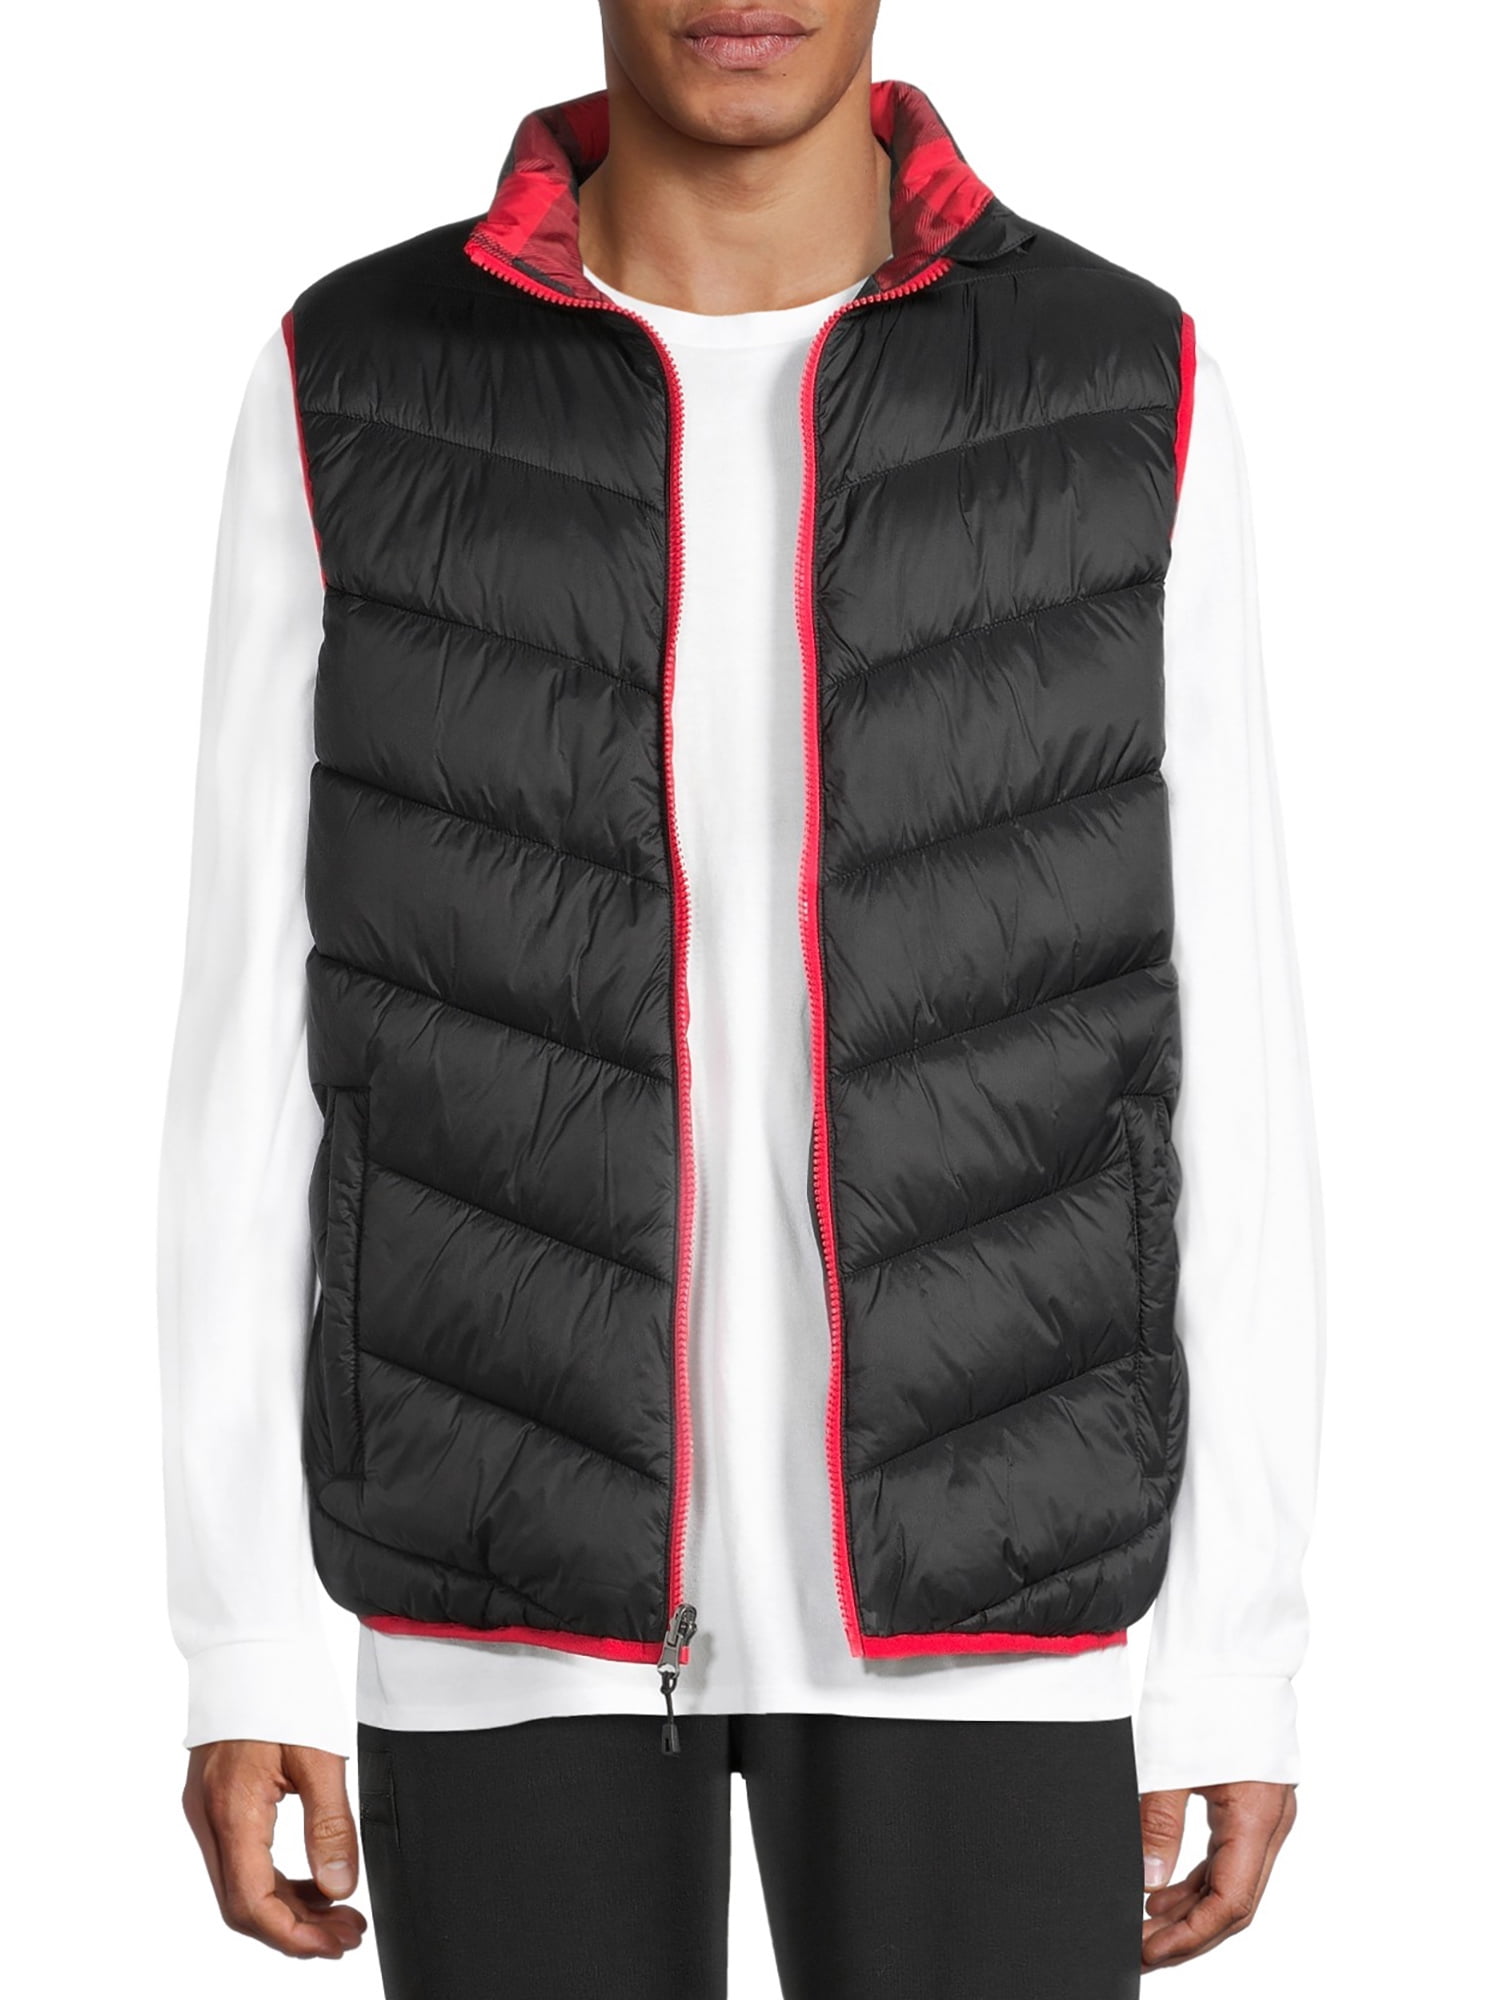 Swiss Tech Men's Reversible Puffer Vest, Up to Size 3XL - Walmart.com